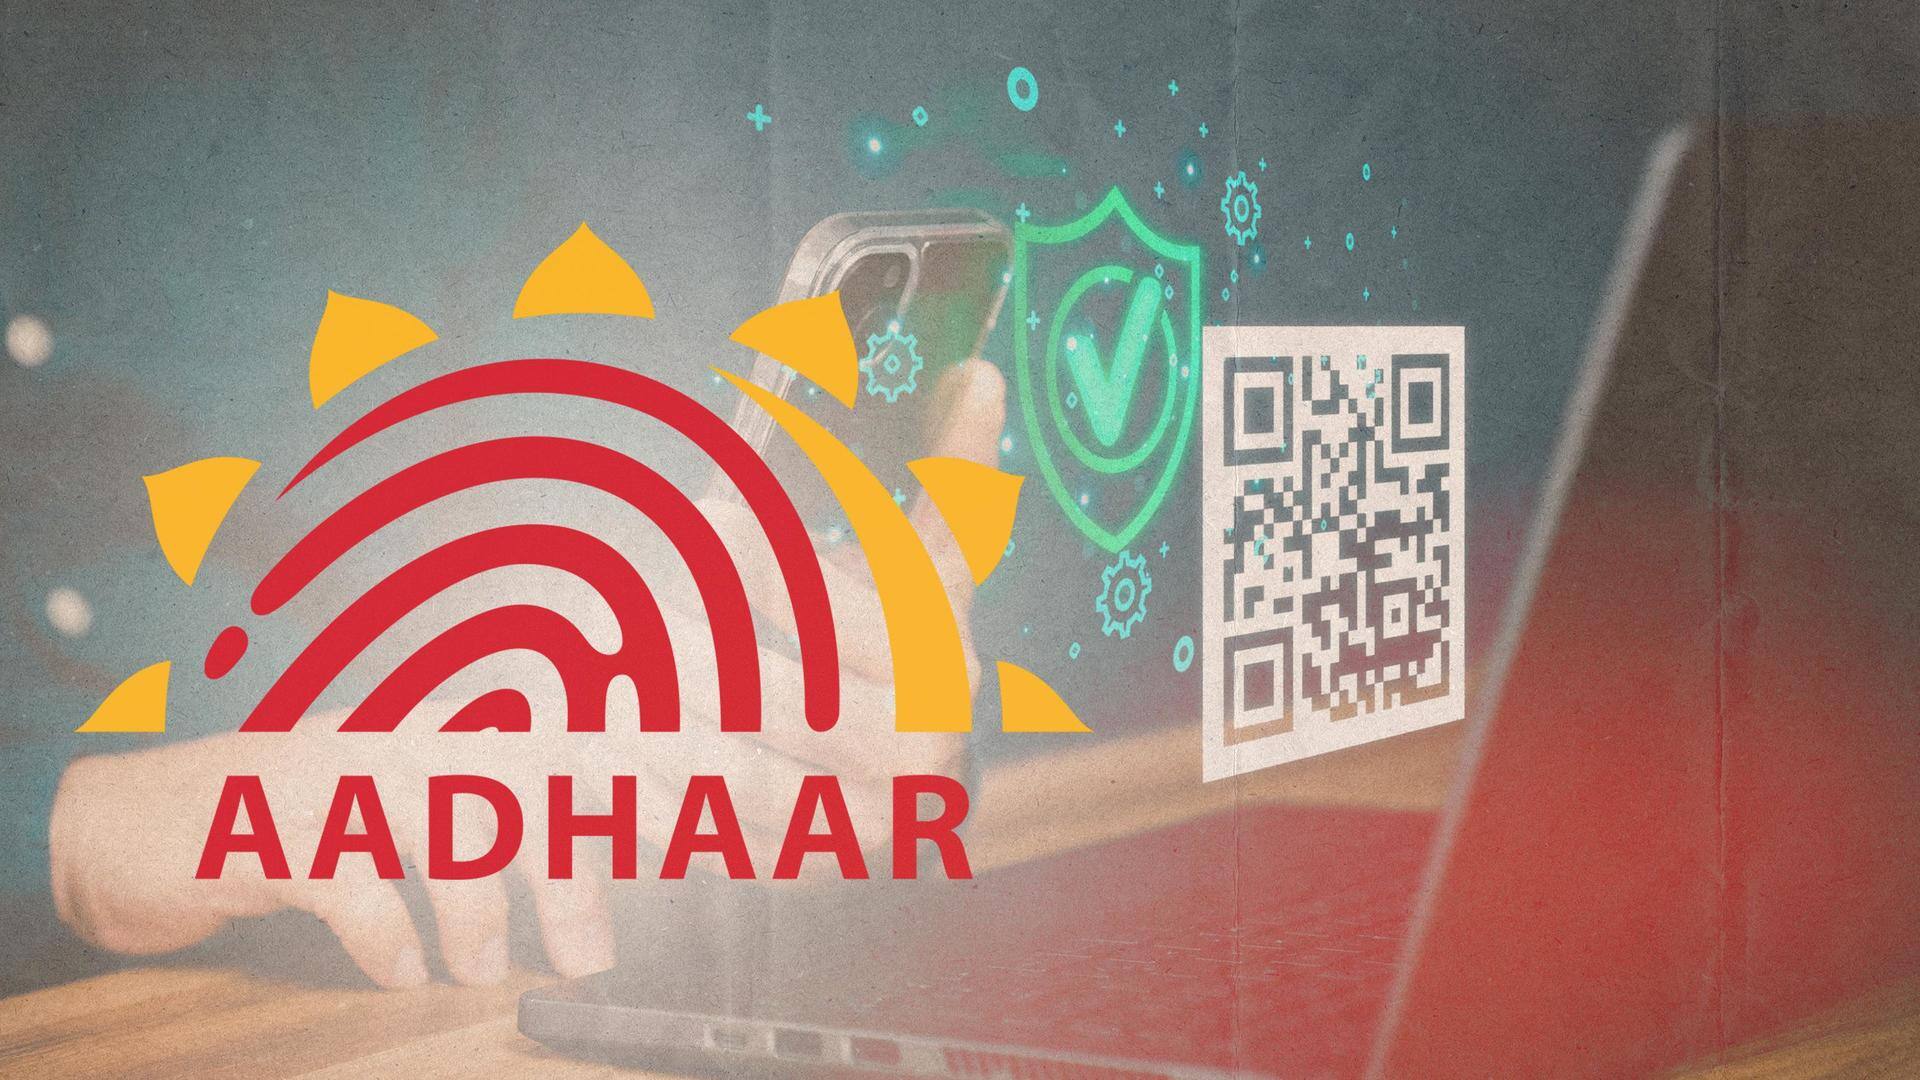 How to get your Aadhaar card verified through QR code